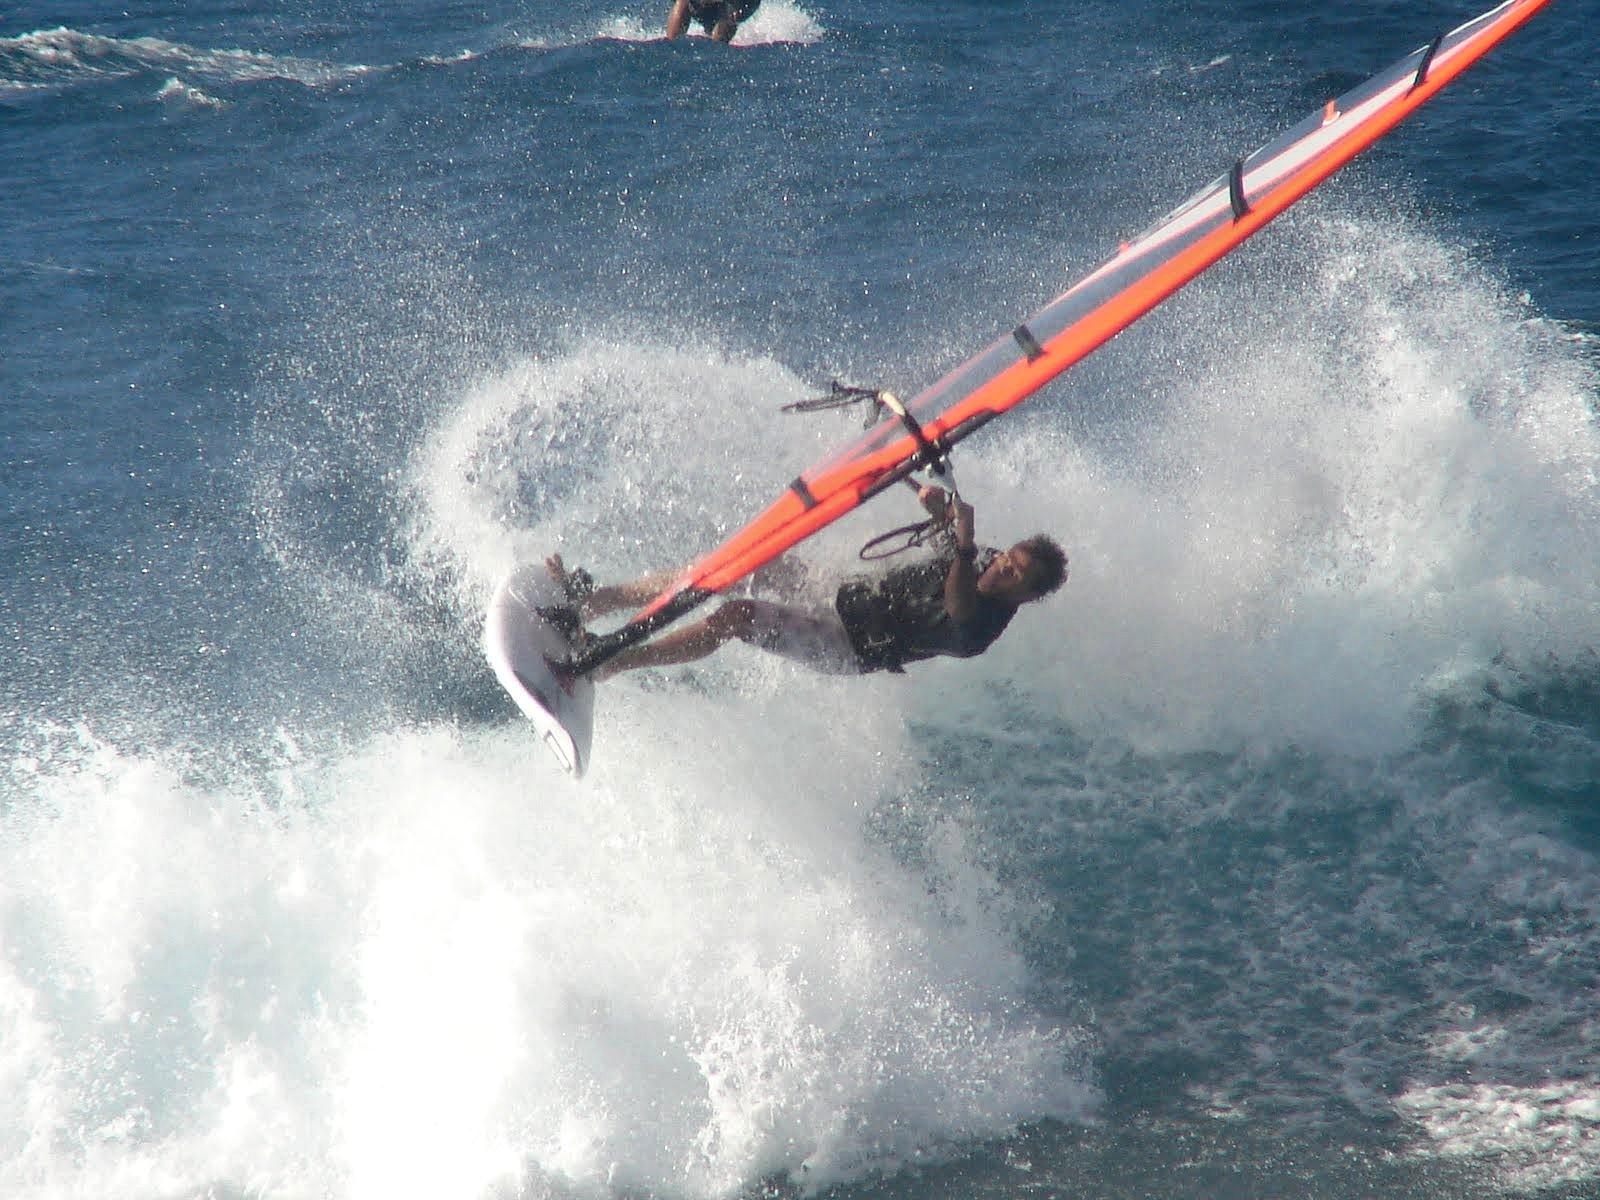 Andrea de Cesaris windsurfing.